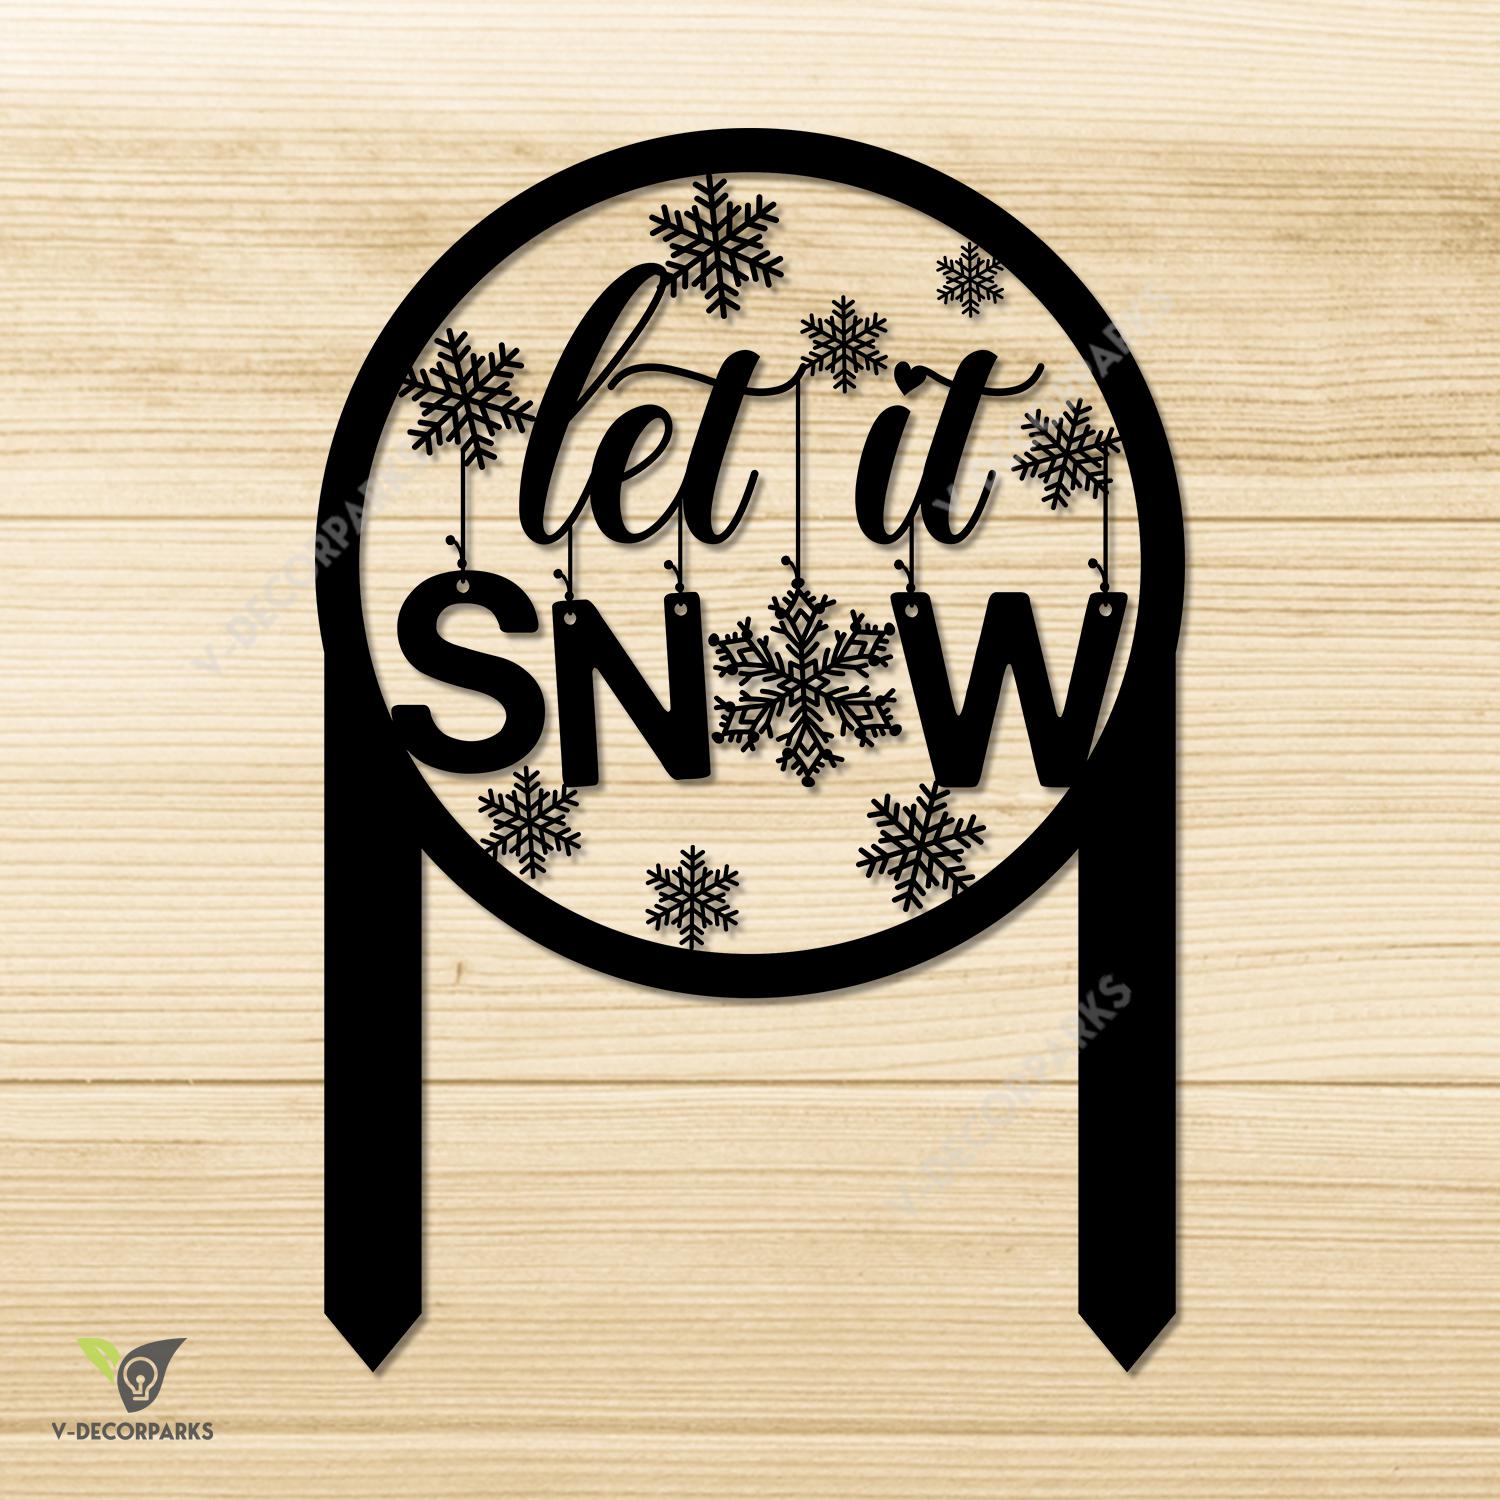 Let It Snow Snowflakes Metal Garden Decor, Let It Snow Christmas Metallic Sign